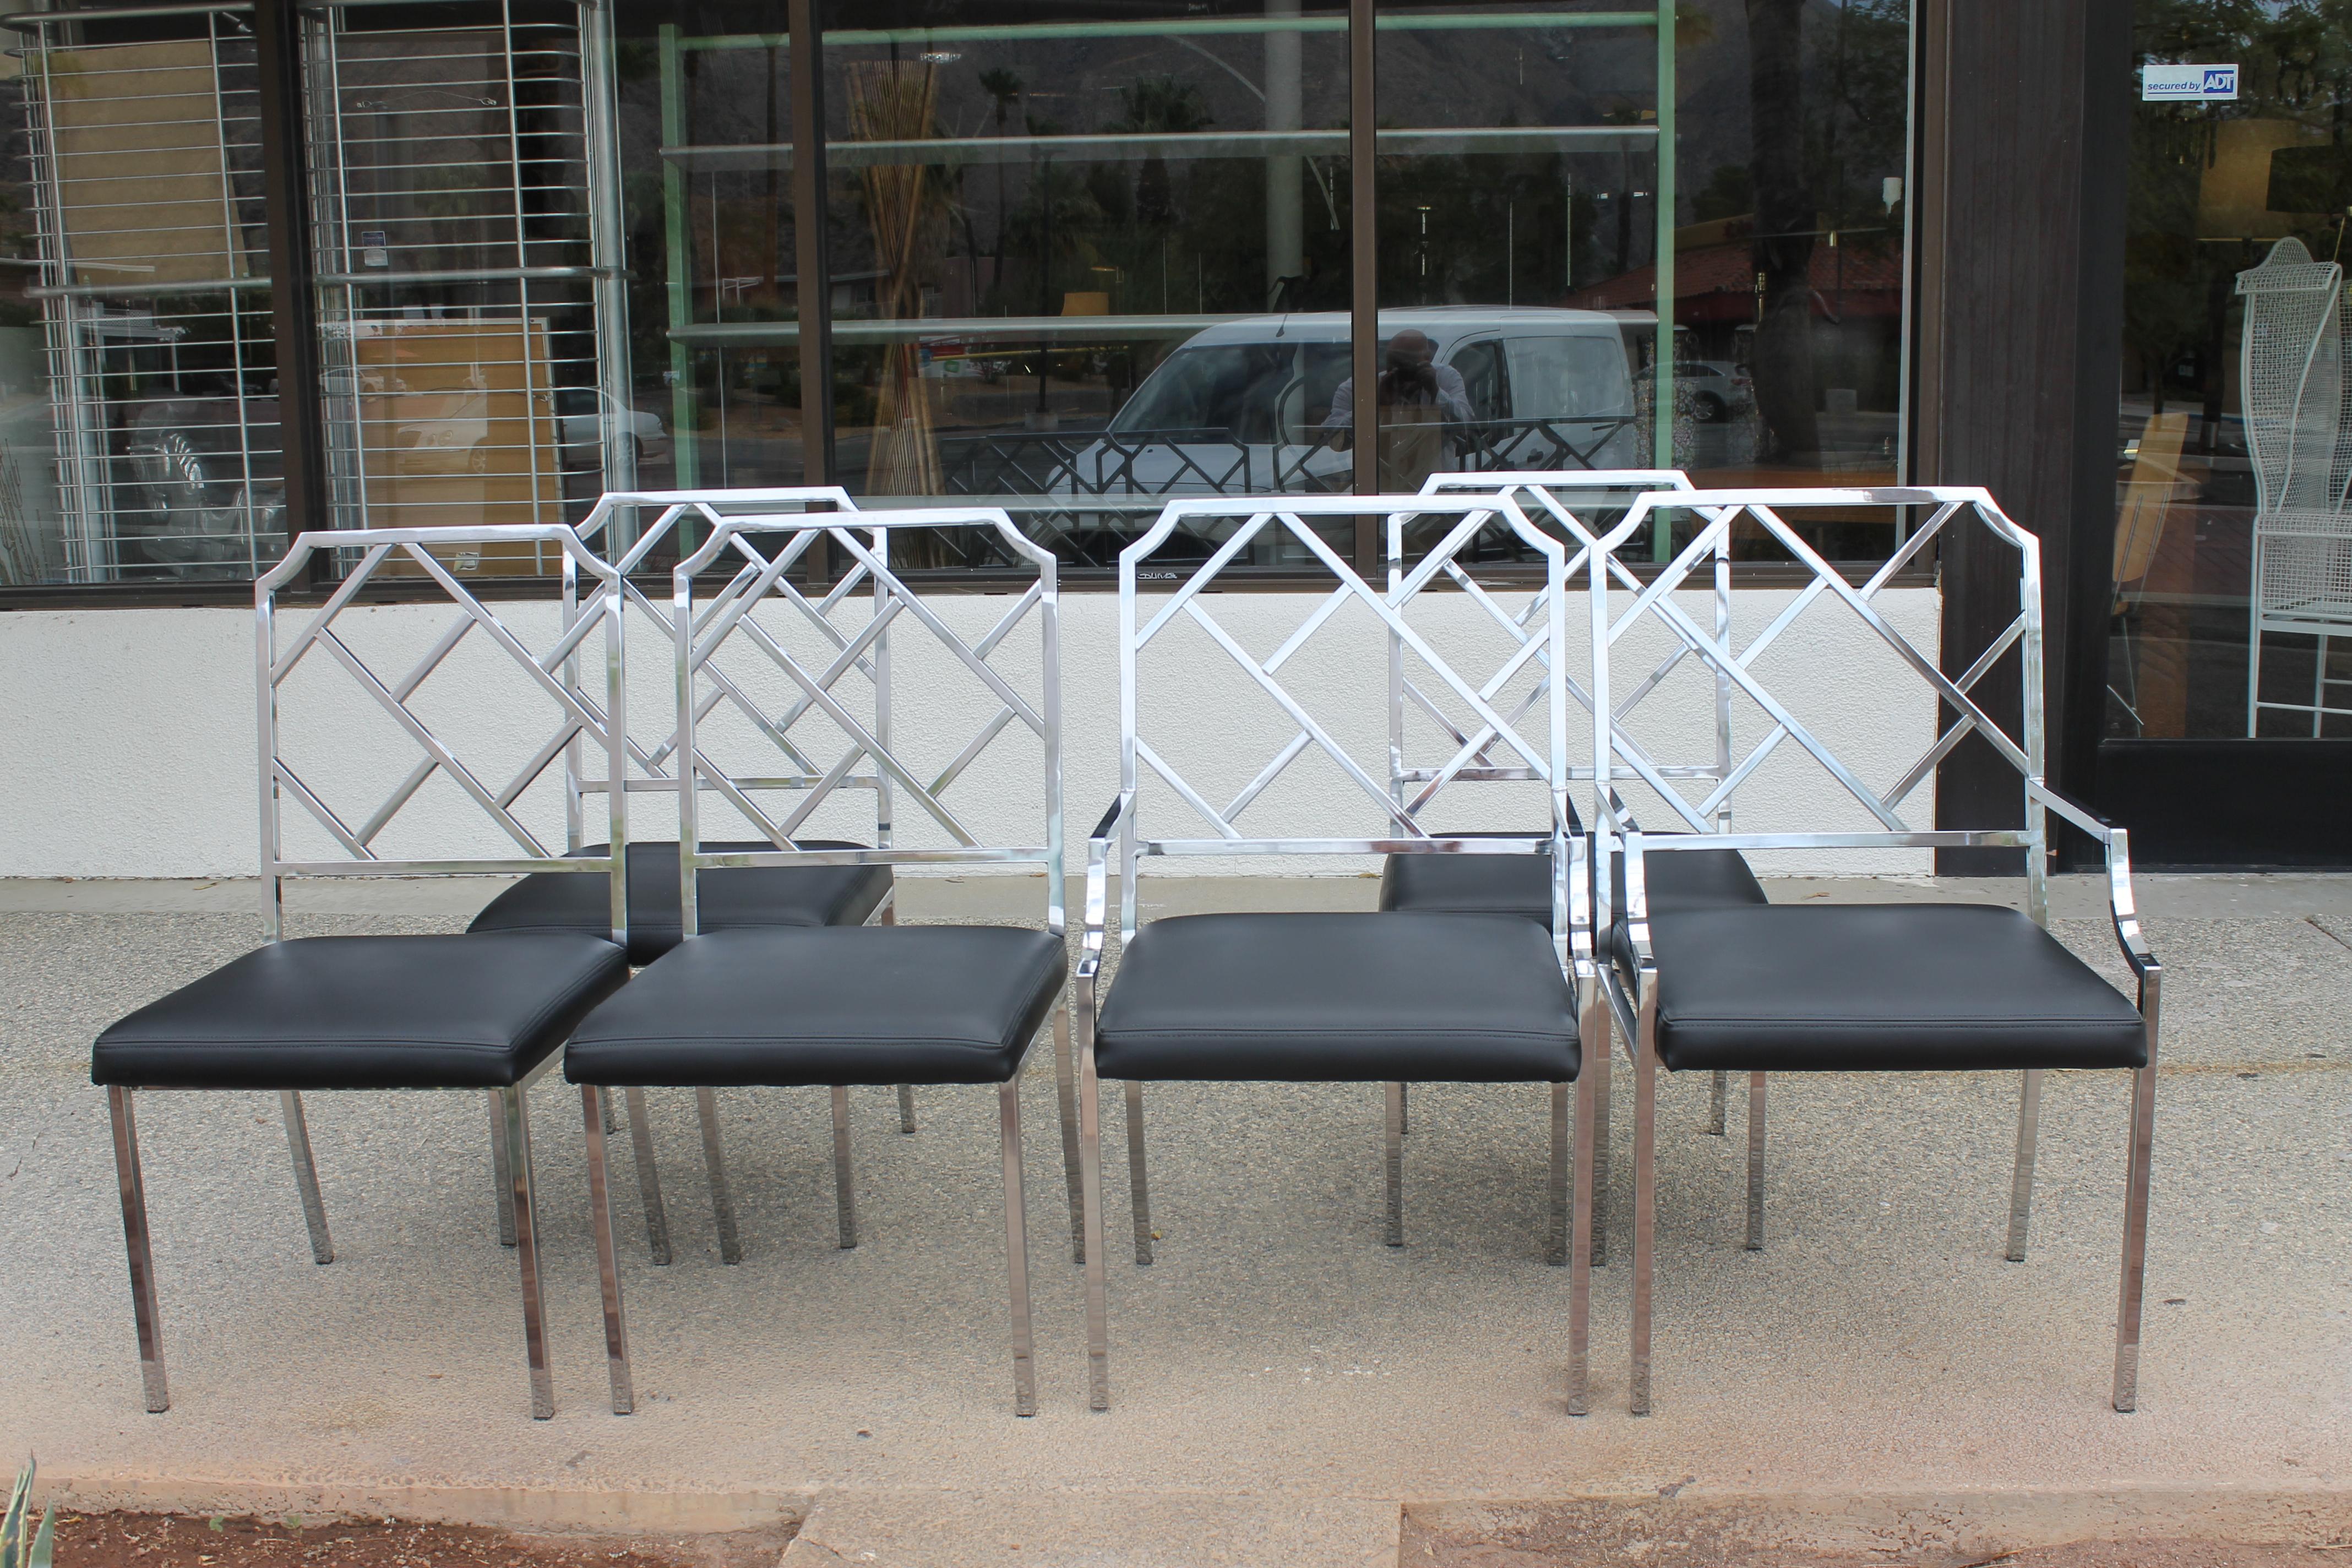 Sechs verchromte Esszimmerstühle von Milo Baughman für das Design Institute of America (DIA). Die Stühle sind aus verchromtem Stahl und wir haben sie mit schwarzem Recycling-Leder bezogen. Die Beistellstühle sind 19